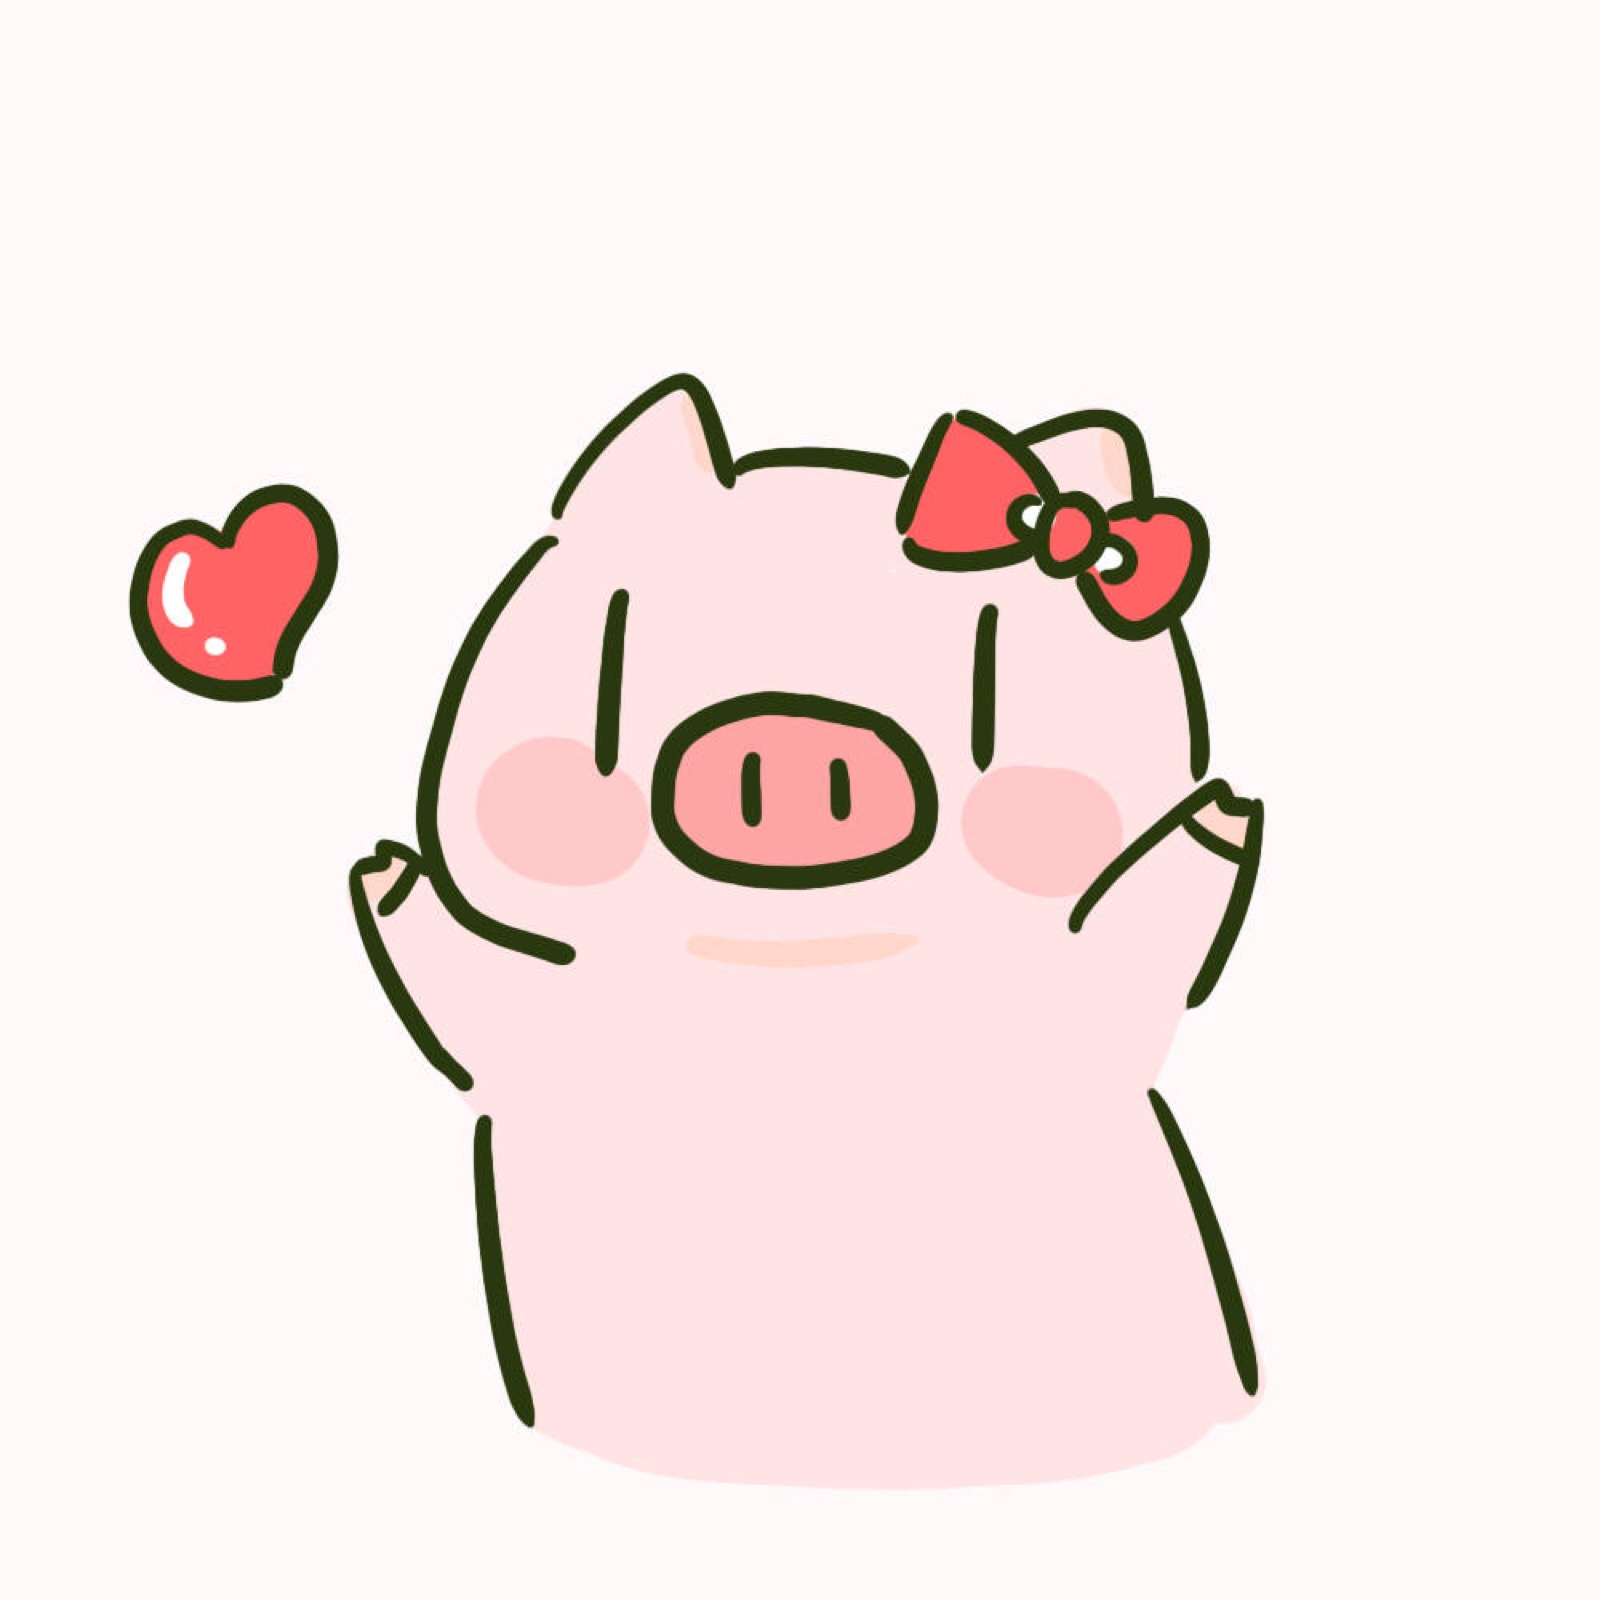 猪猪头像,情侣头像,可爱头像,闺蜜头像,更多见微博yaoooooooir,其他